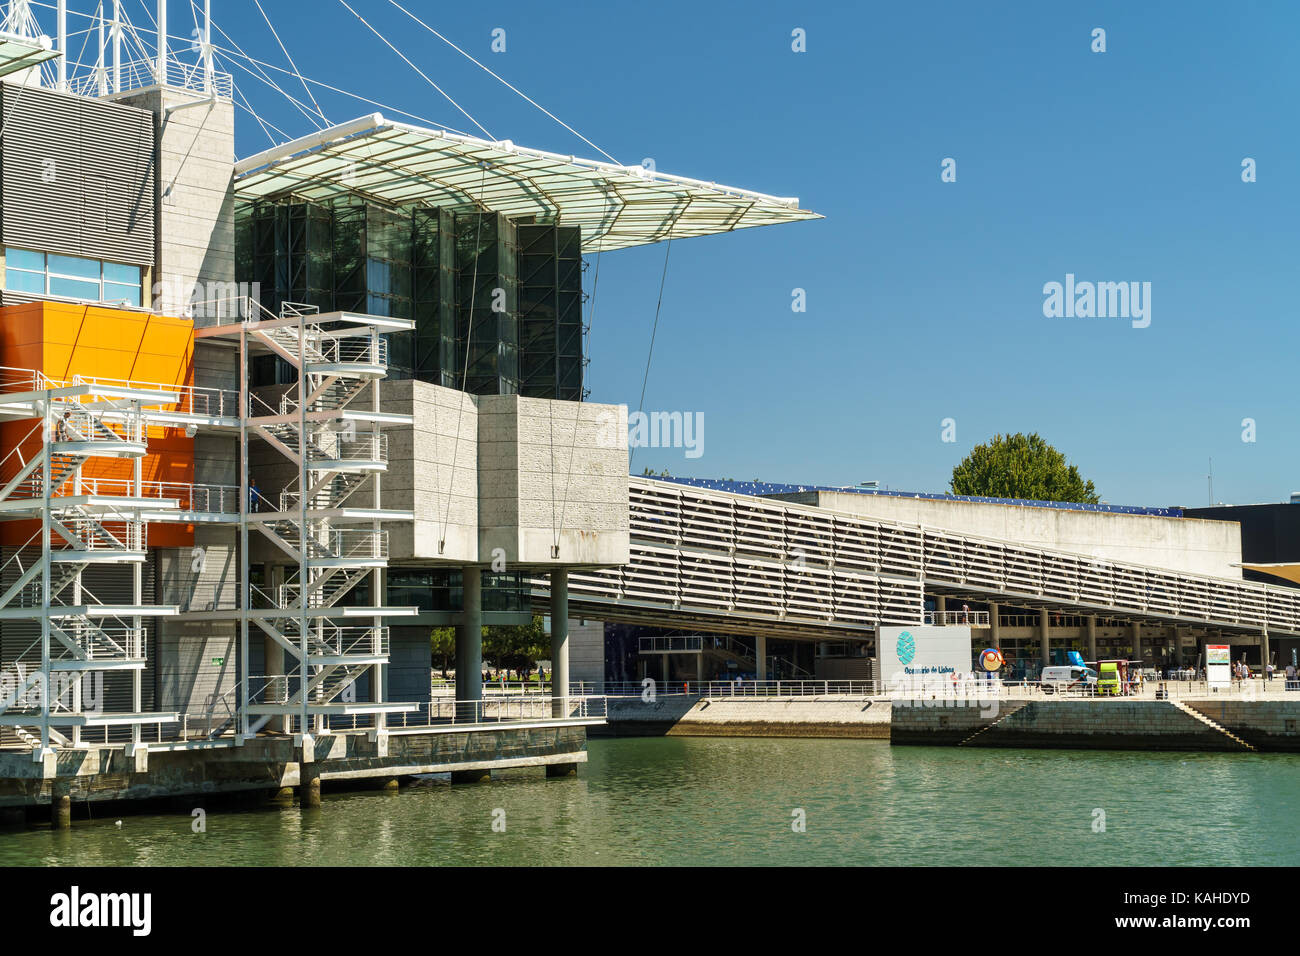 Lissabon, Portugal - 10. AUGUST 2017: Das Ozeanarium befindet sich im Parque das Nacoes, das war die Messe für die 1998 Expositio entfernt Stockfoto